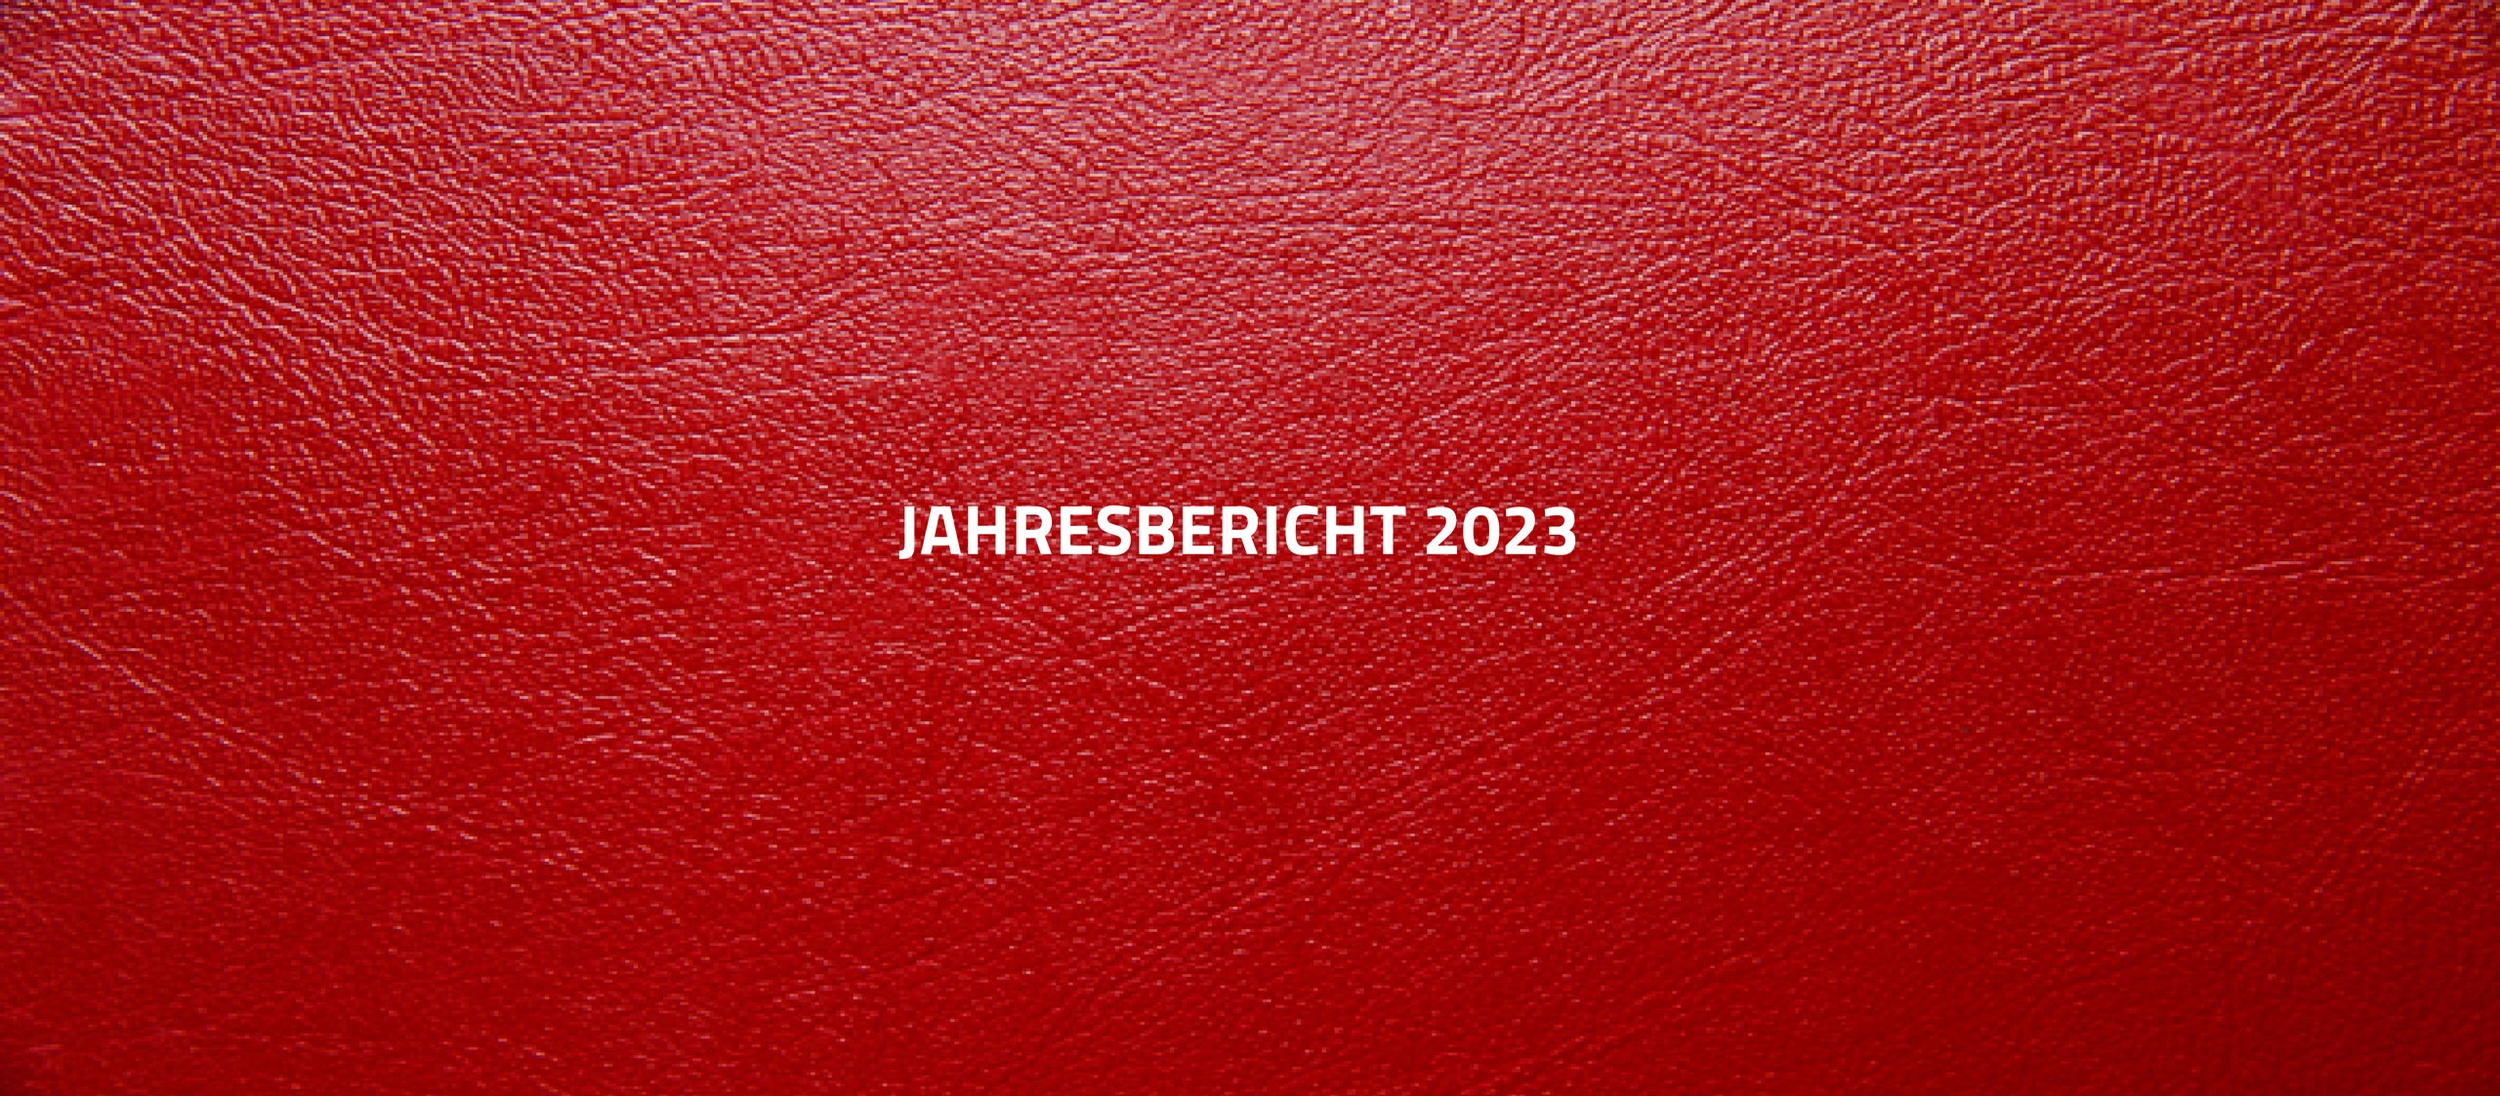 Header Bild Jahresbericht 2023 in Lederoptik © Rauch-Gessl, AK Niederösterreich